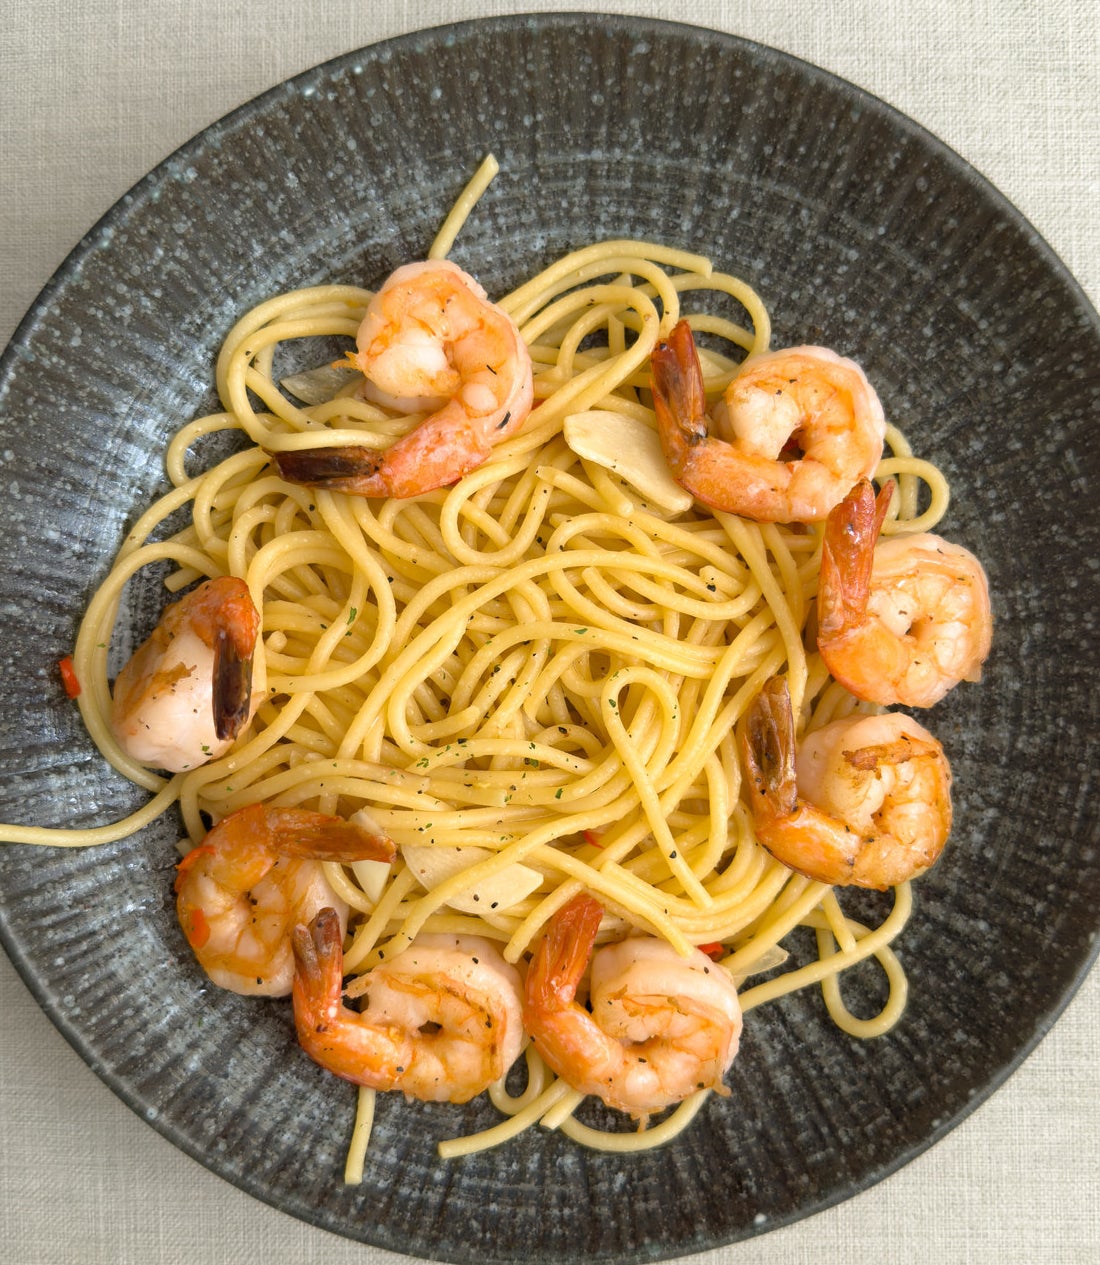 A plate of shrimp pasta.